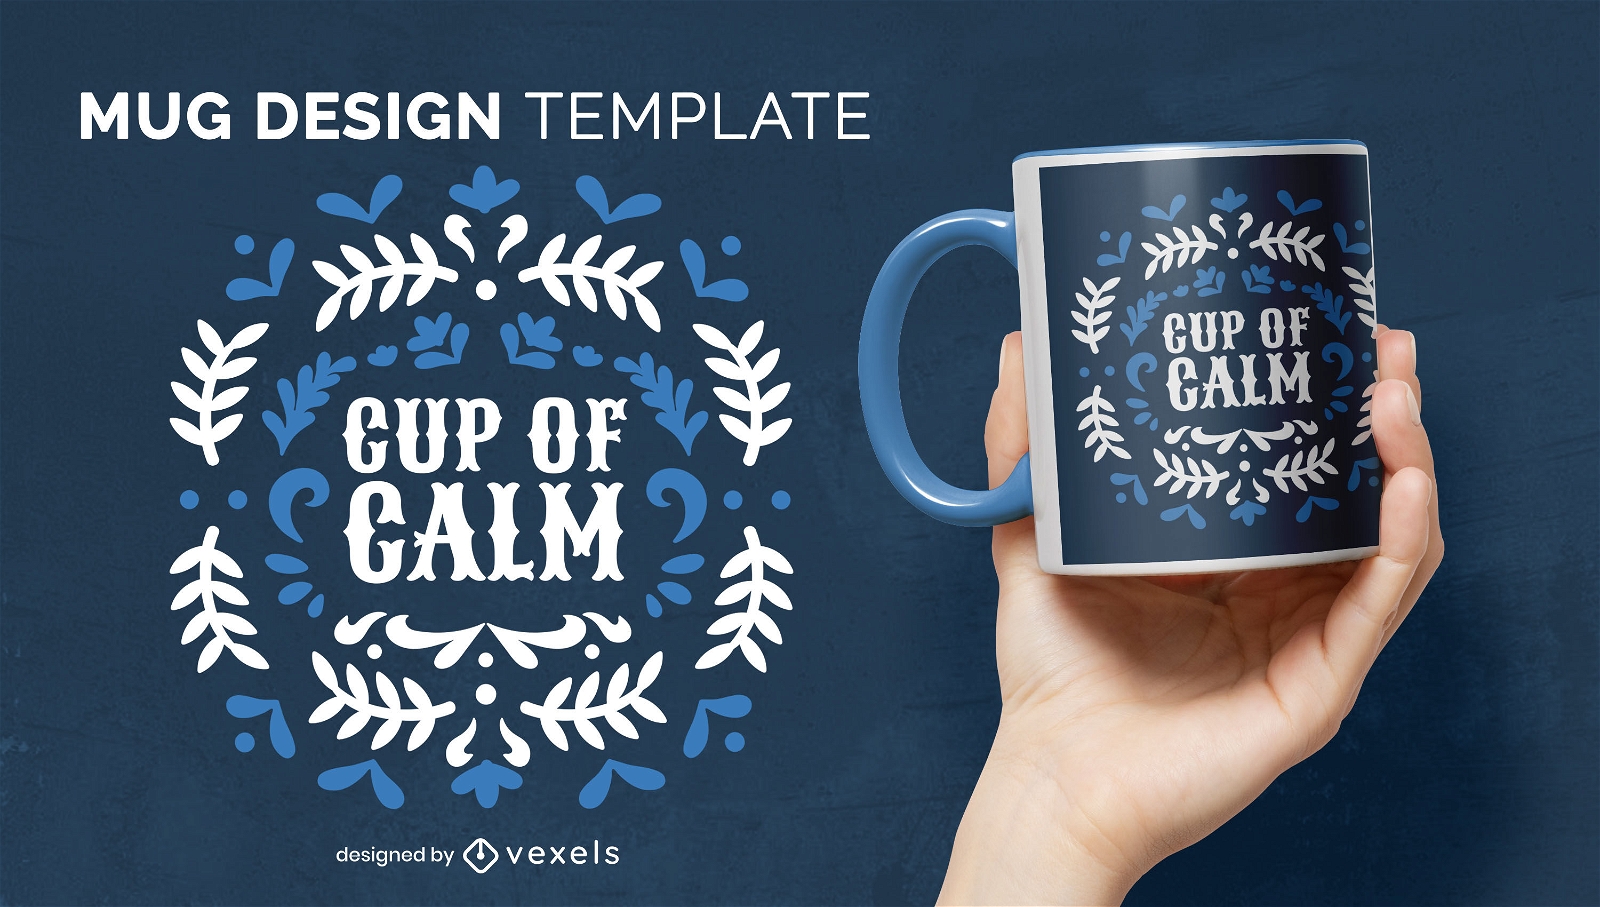 Cup of calm mug design